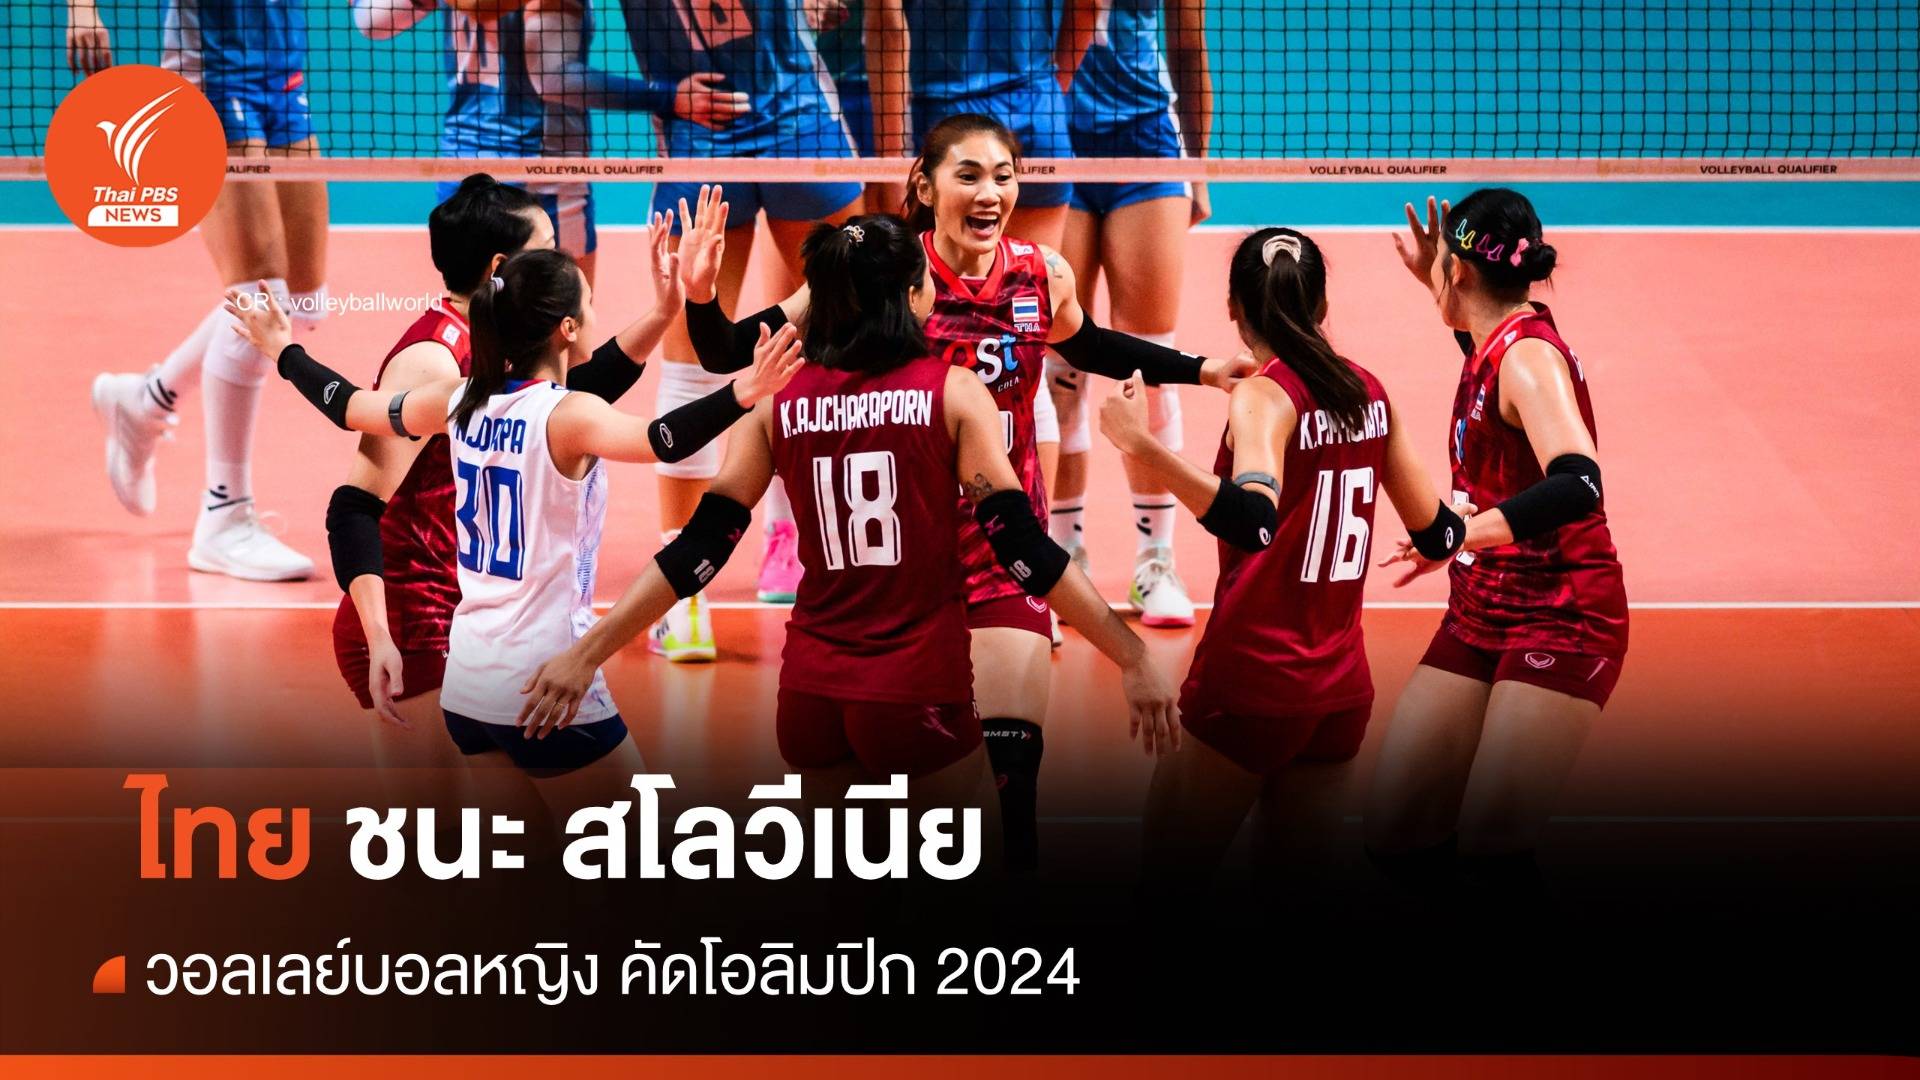  นักตบสาวไทย ชนะ สโลวีเนีย 3 เซตรวด คัดโอลิมปิก 2024 